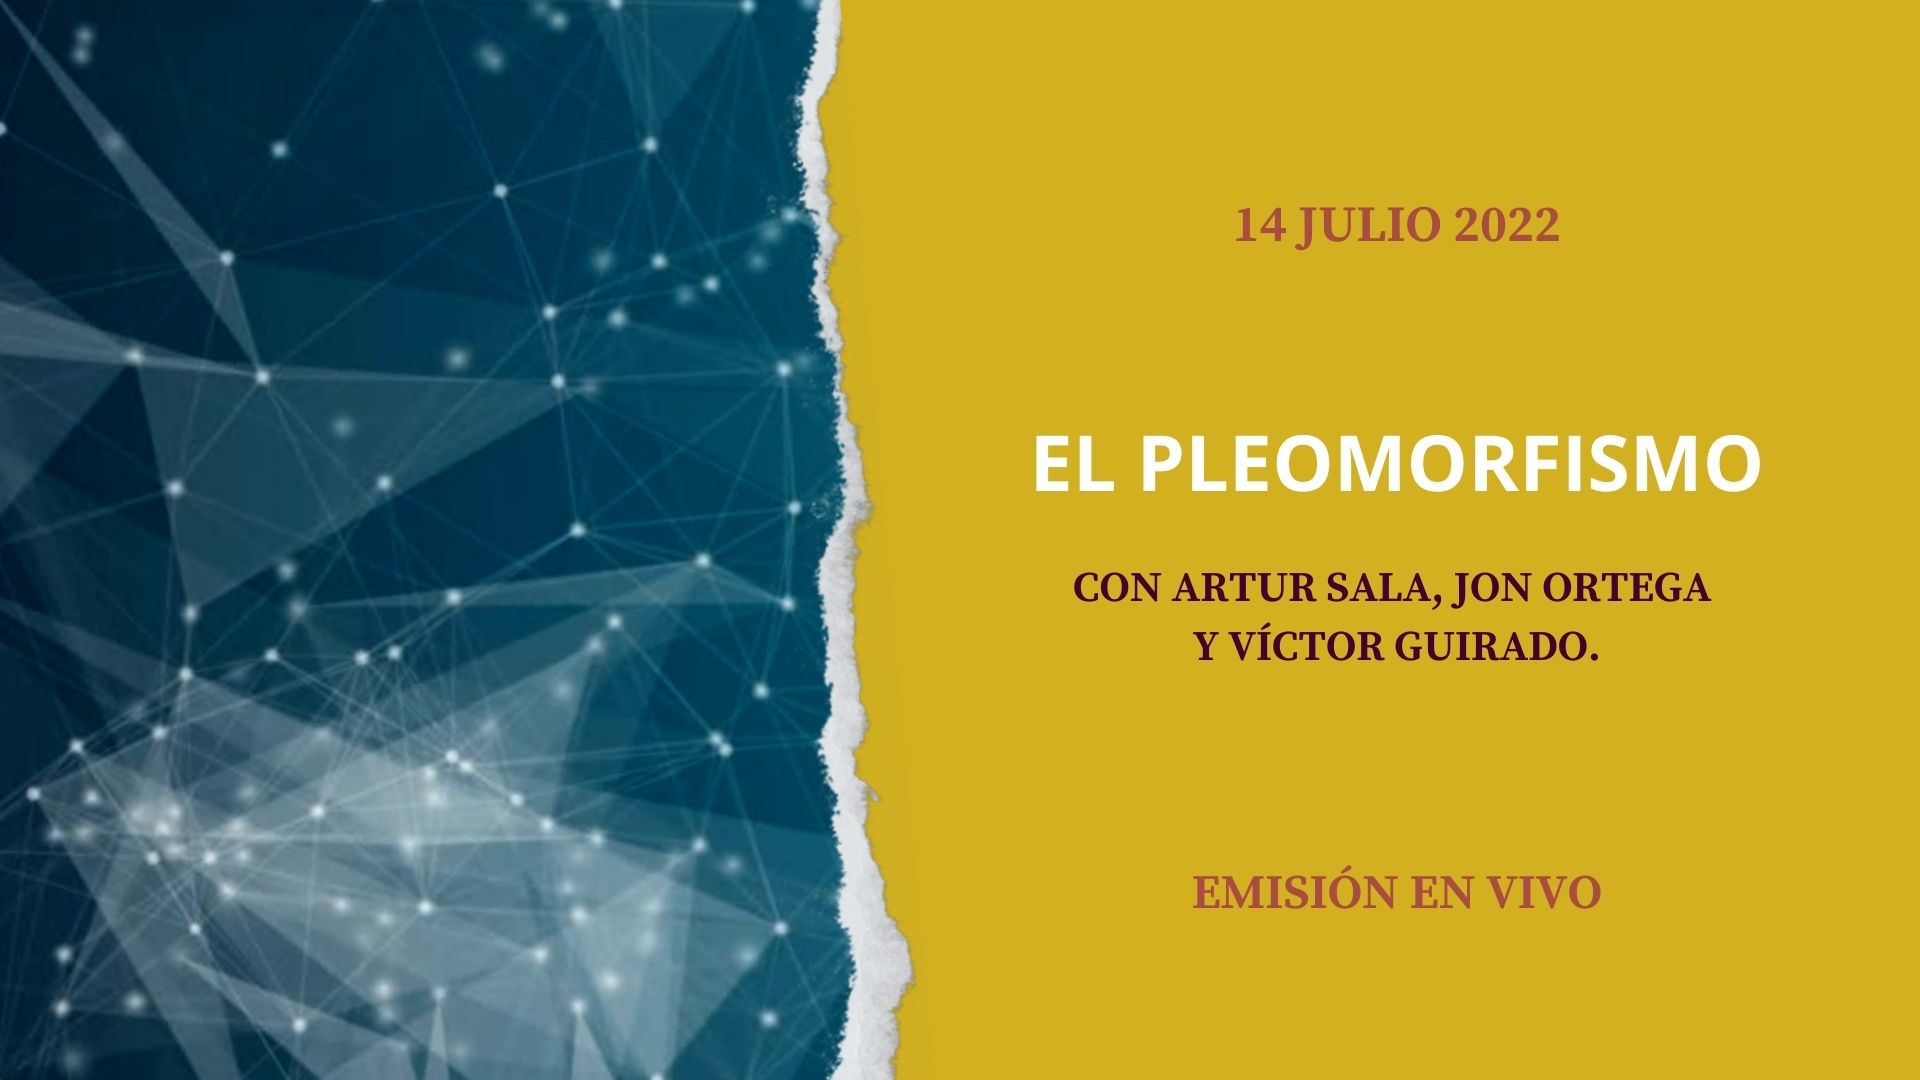 14 Julio 2022

El pleomorfismo

Artur Sala, Victor Guirado, Marina Castells Quero y Jon Ortega.

Emisión en Vivo